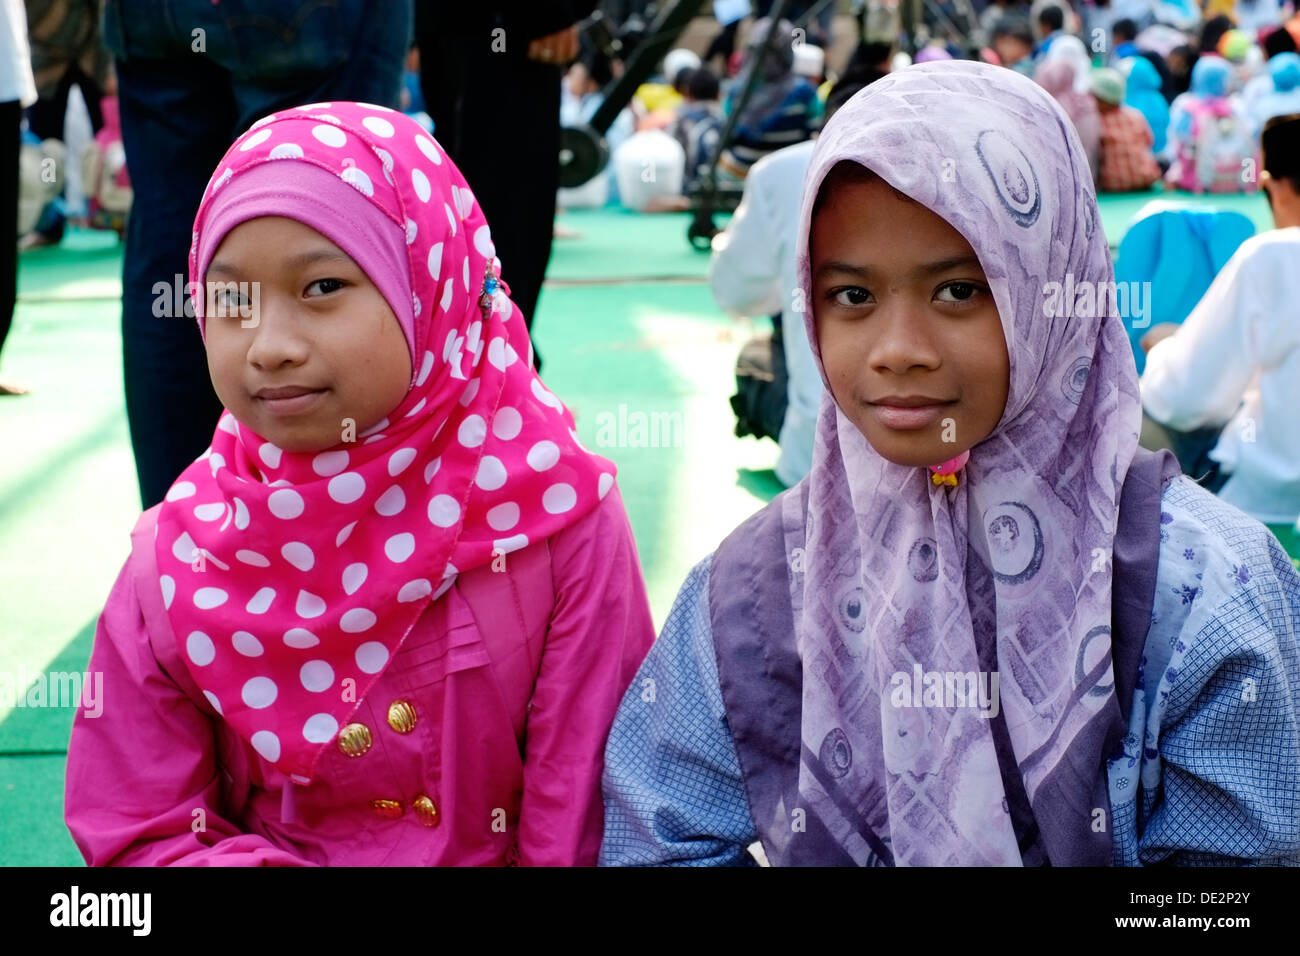 Giovani orfani godetevi un concerto gratuito e intrattenimento durante le vacanze Eid celebrazioni malang java indonesia Foto Stock